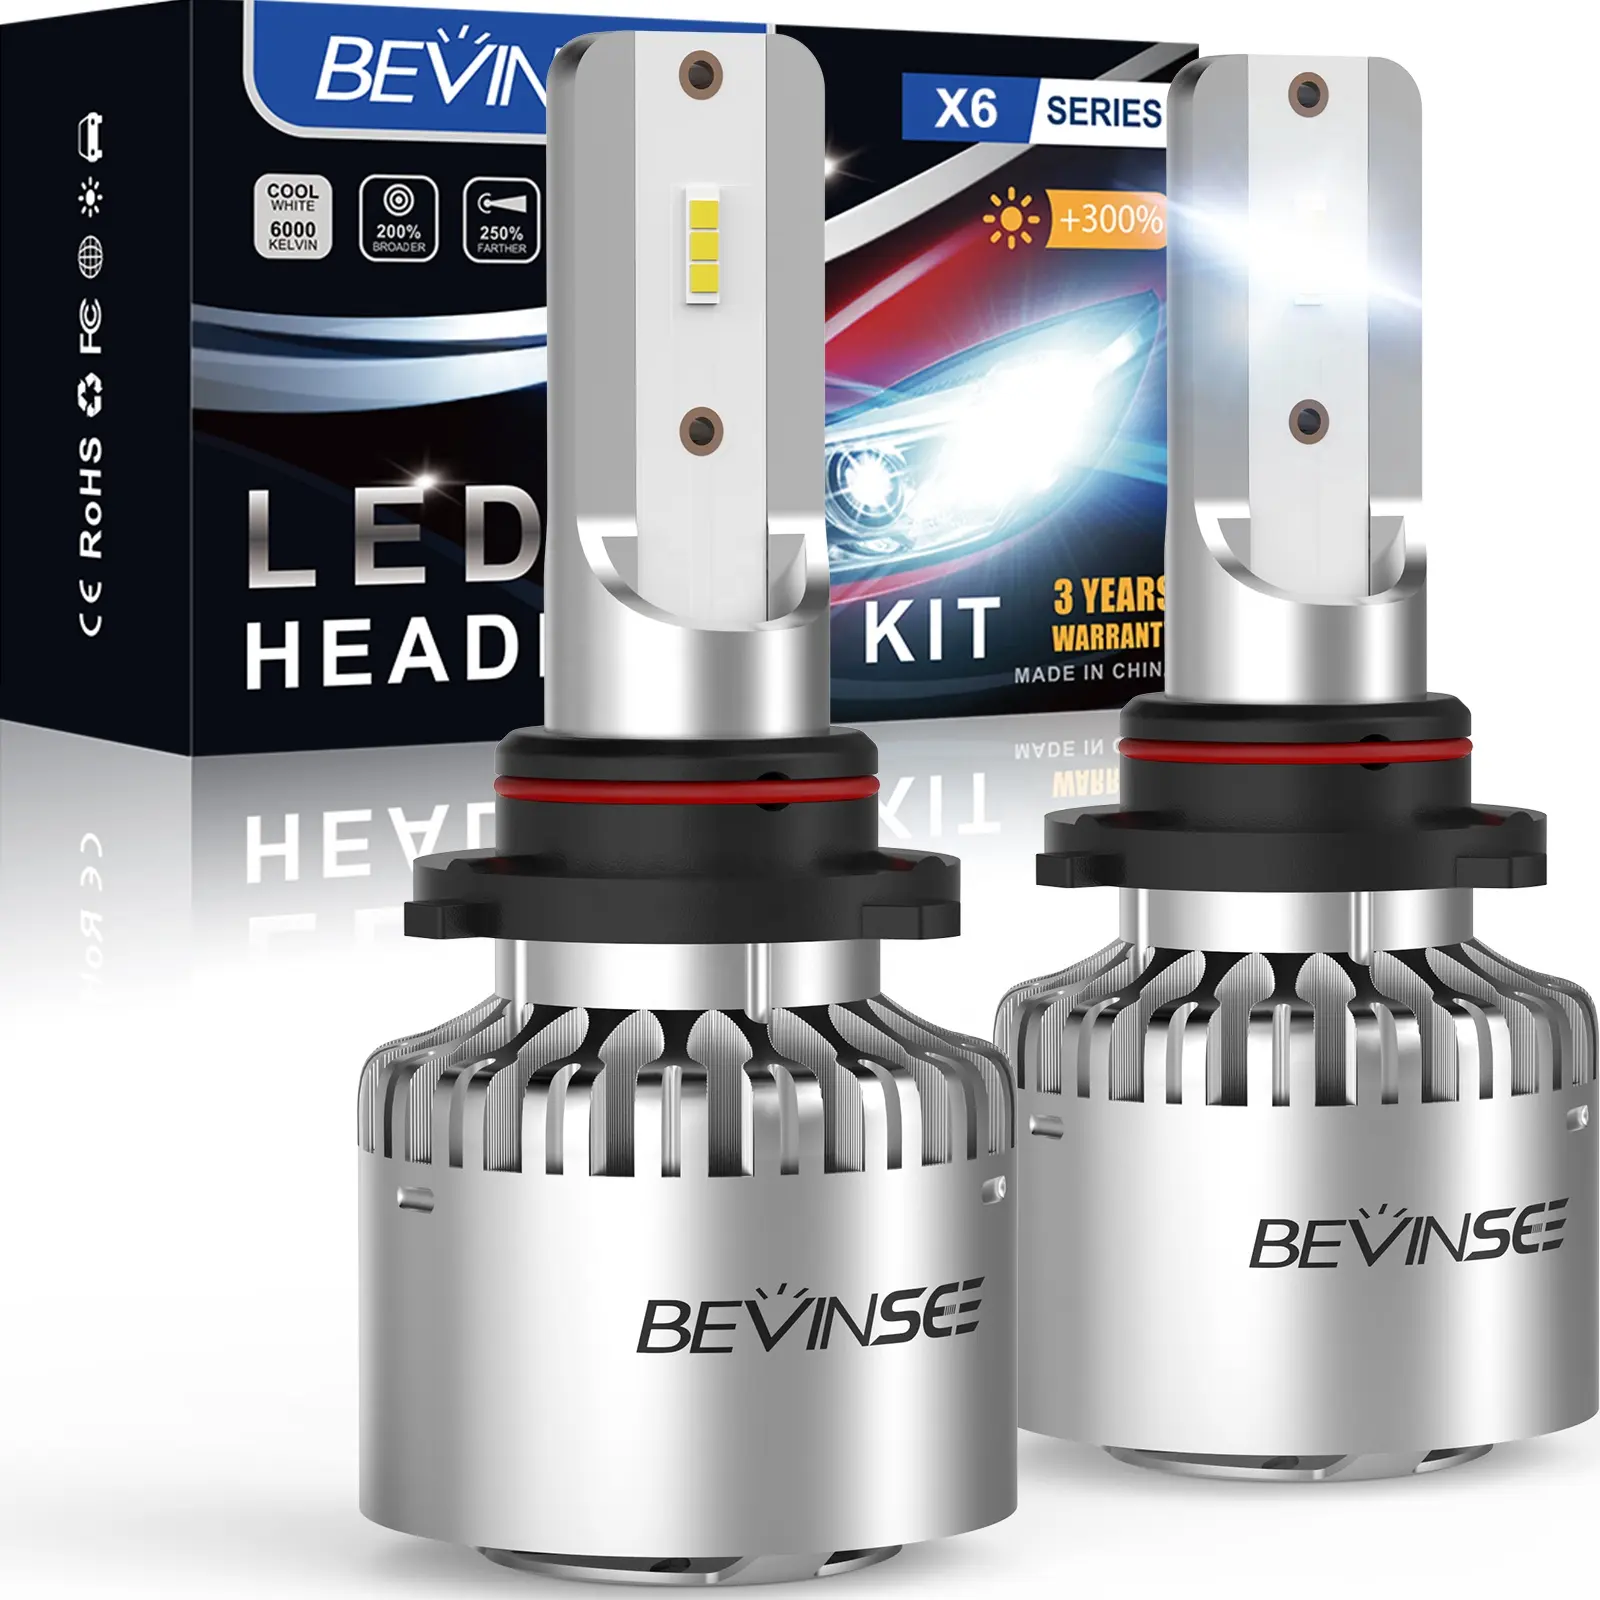 Bevinsee 2x 8000LM 6000K LED 9006 bola lampu depan HB4 LED bola lampu kabut untuk VW untuk Passat 3C2 3C5 2005-2010 2011